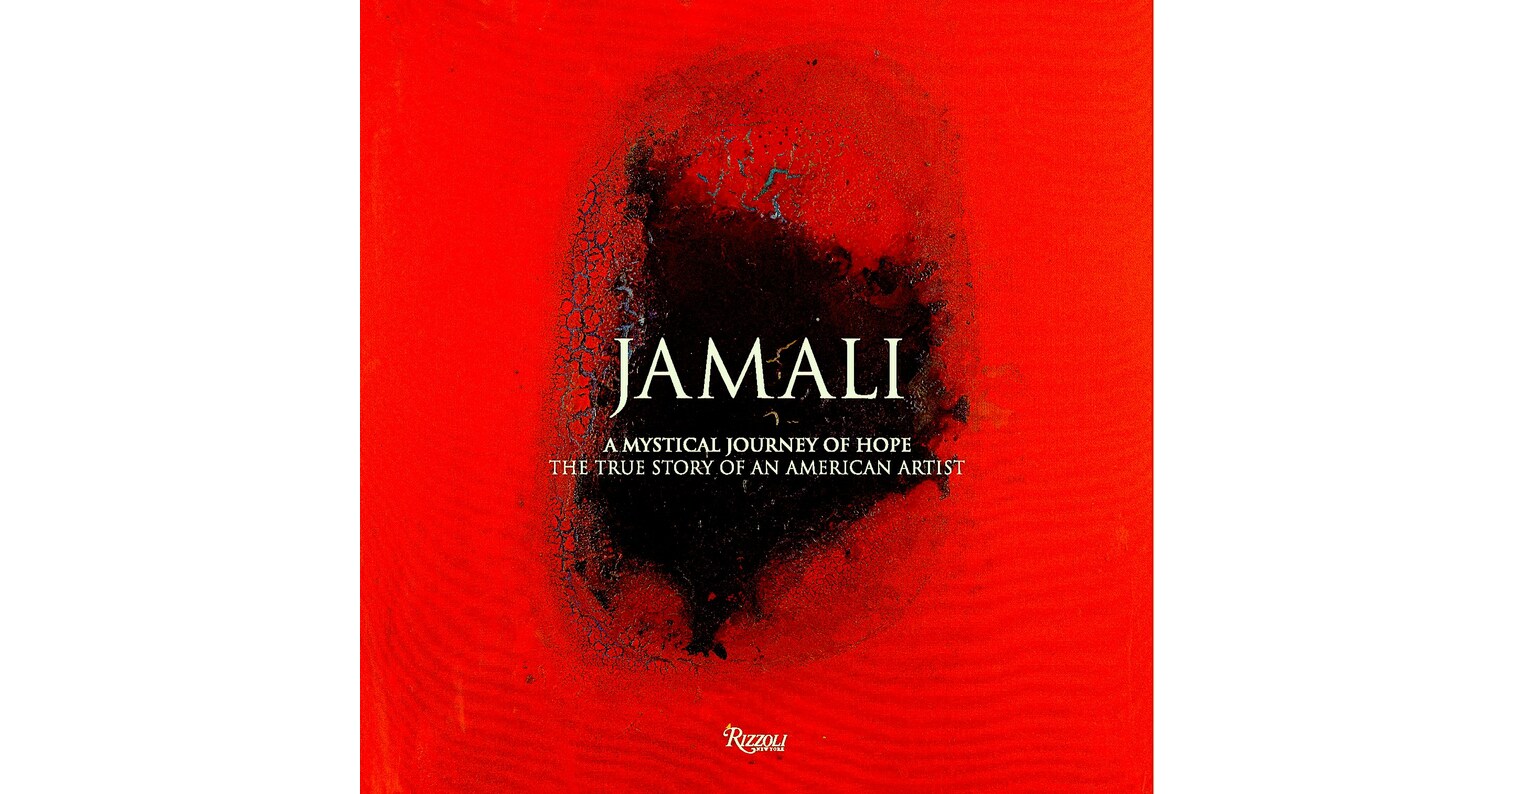 https://mma.prnewswire.com/media/2045785/Jamali_book_cover.jpg?p=facebook